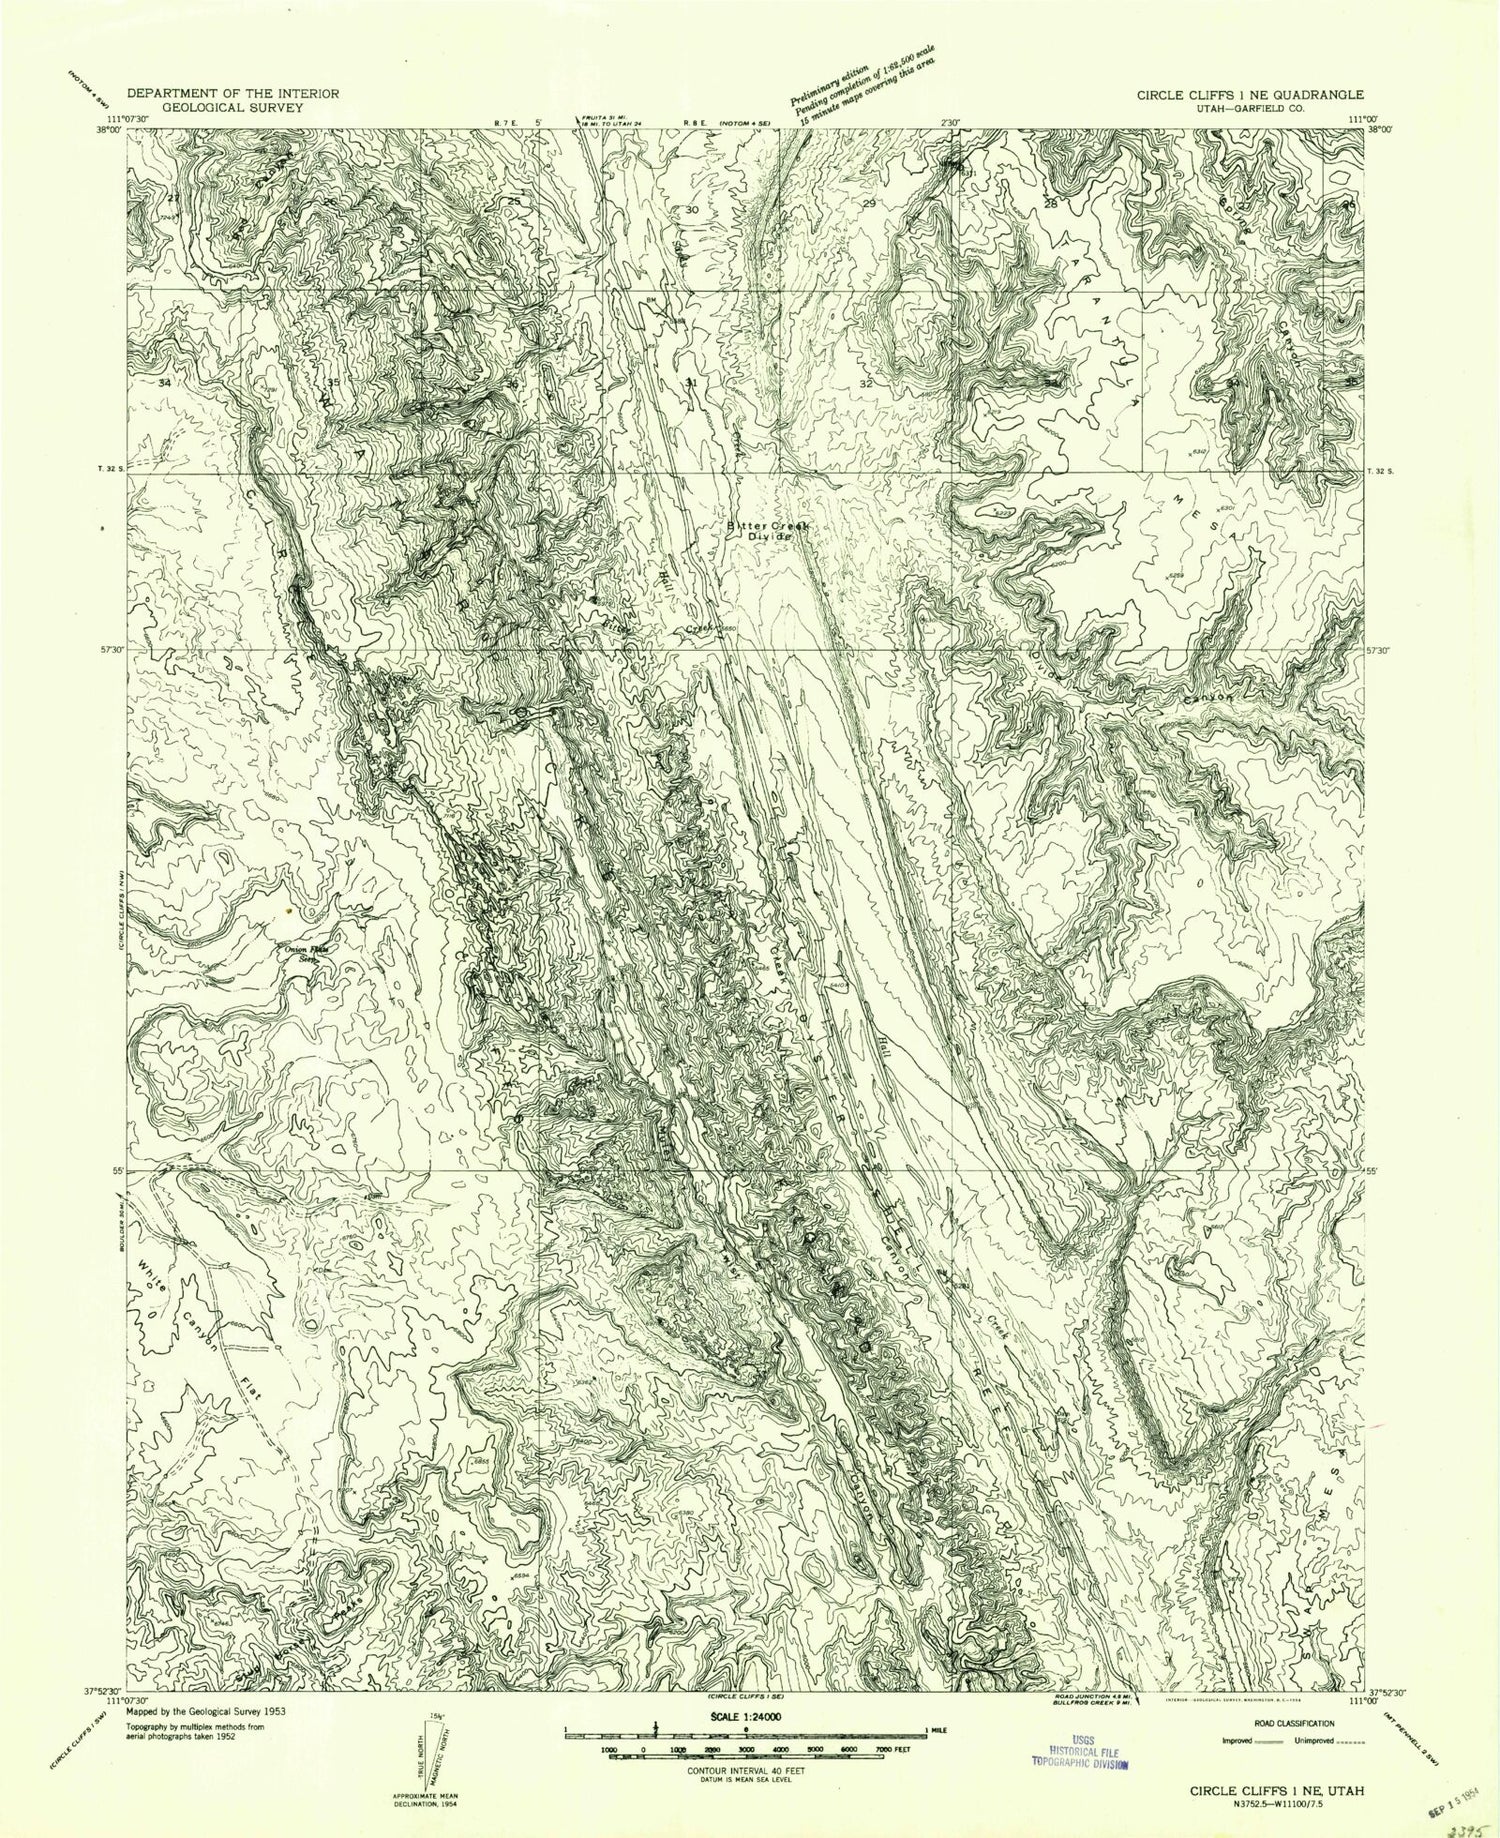 Classic USGS Bitter Creek Divide Utah 7.5'x7.5' Topo Map Image